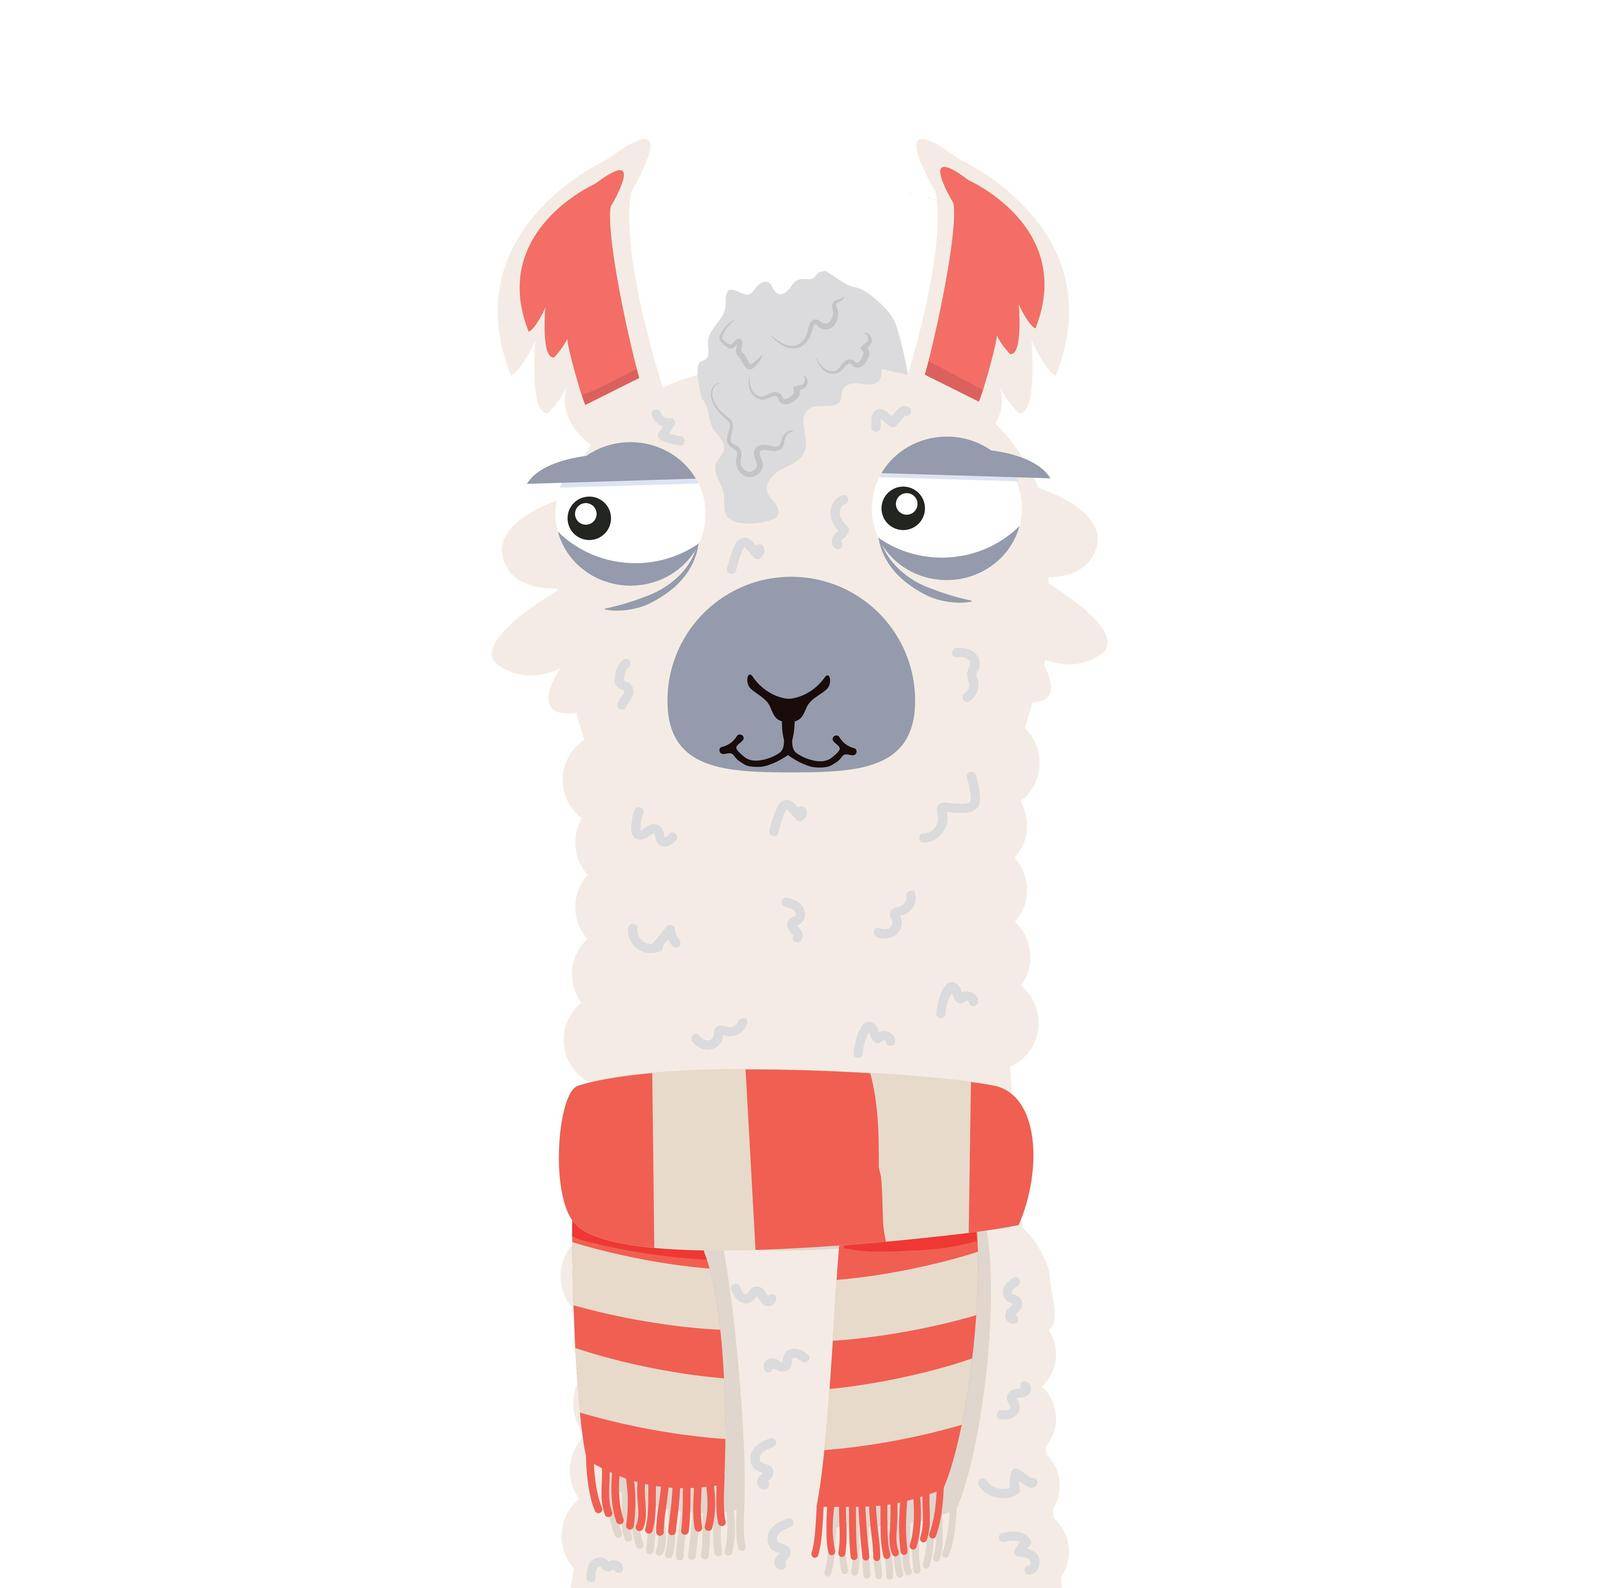 Llama or alpaca scarf smiling portrait by focus_bell